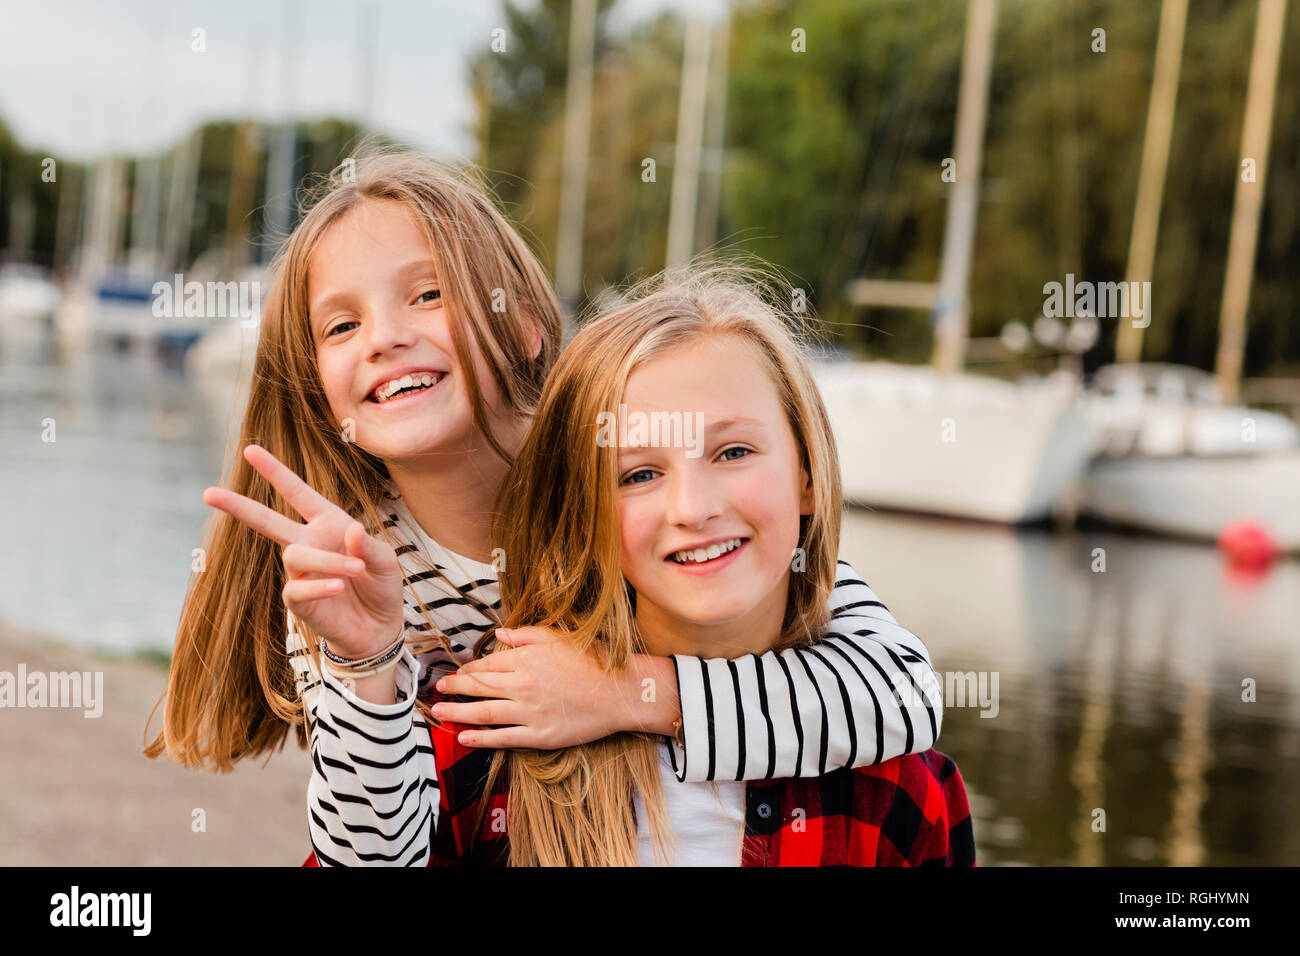 Le portrait de deux jeunes filles heureux Banque D'Images